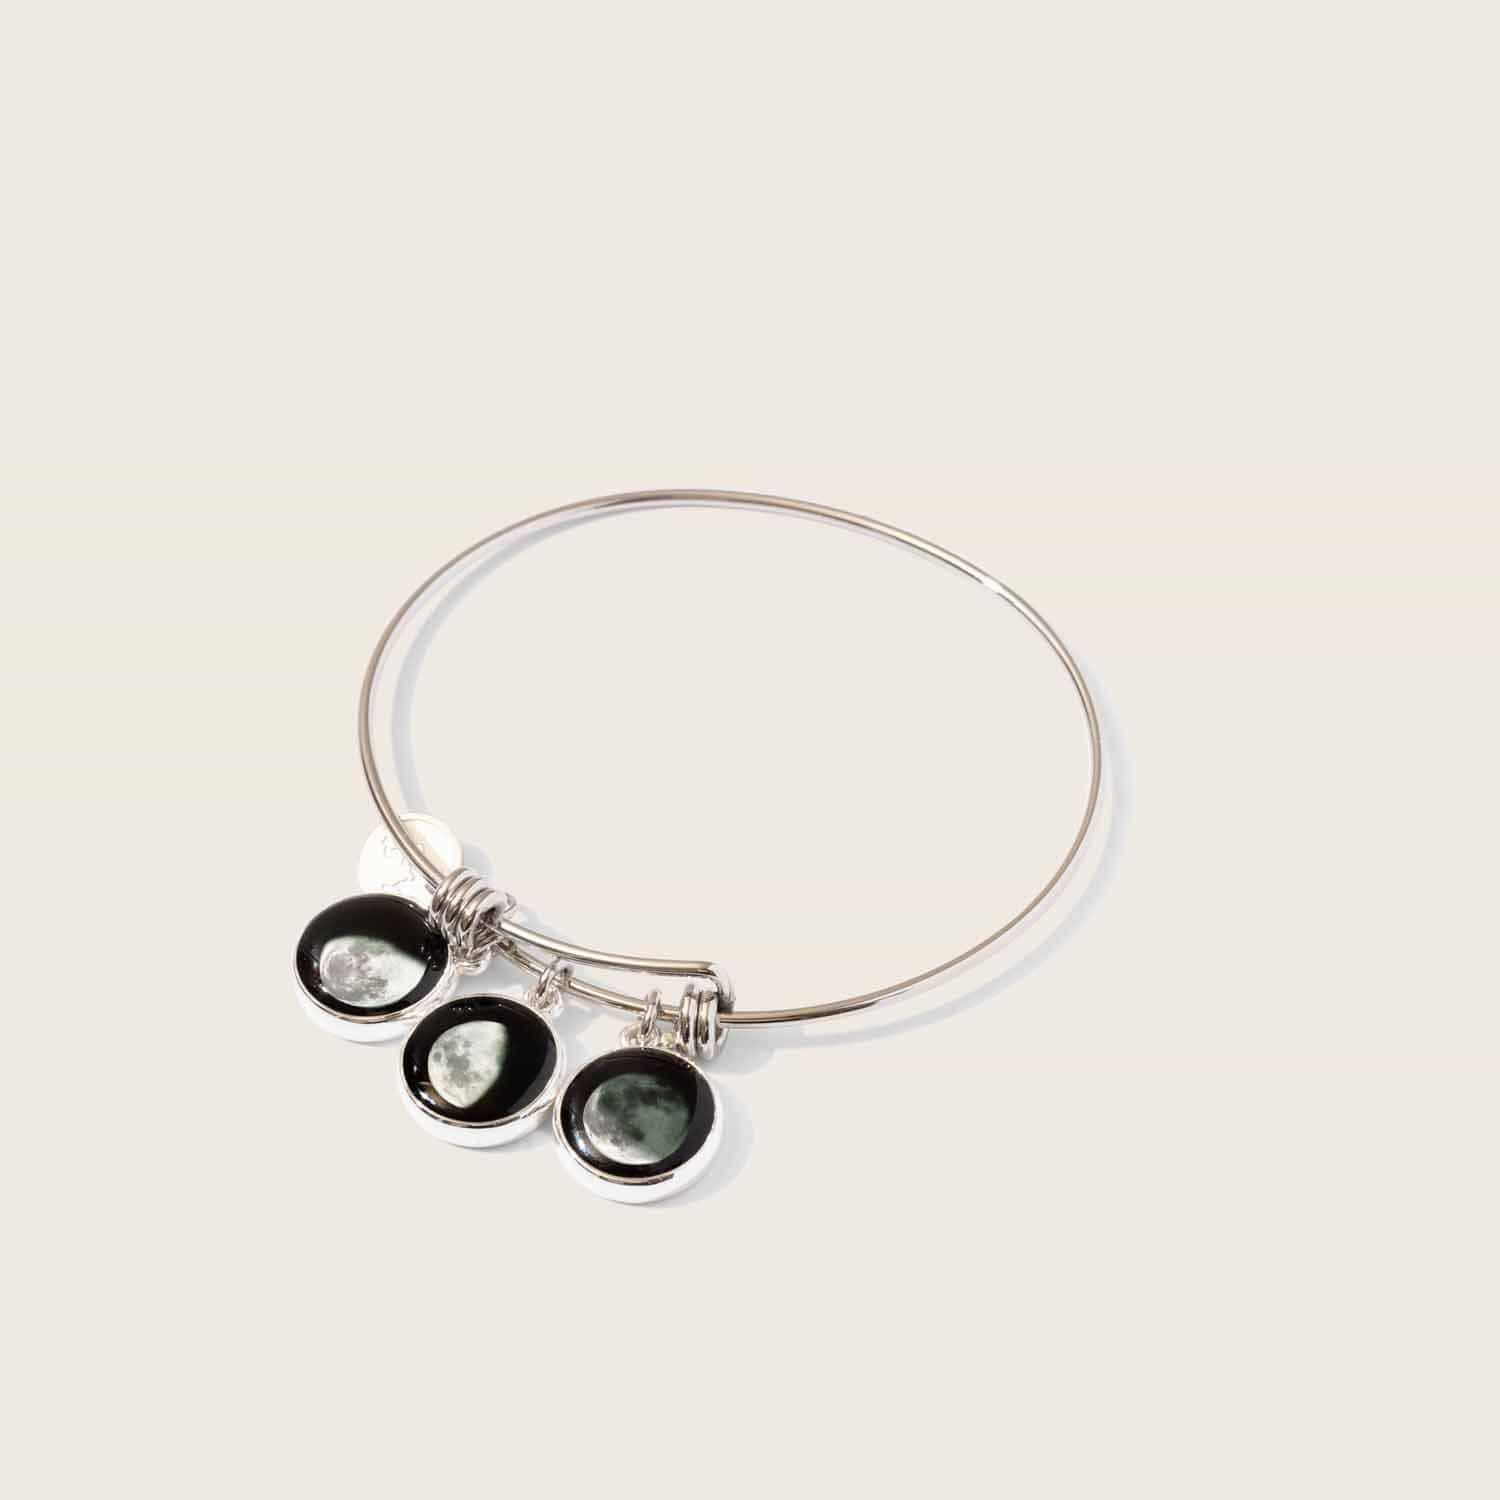 Moonstock 3-Charm Bangle Bracelet